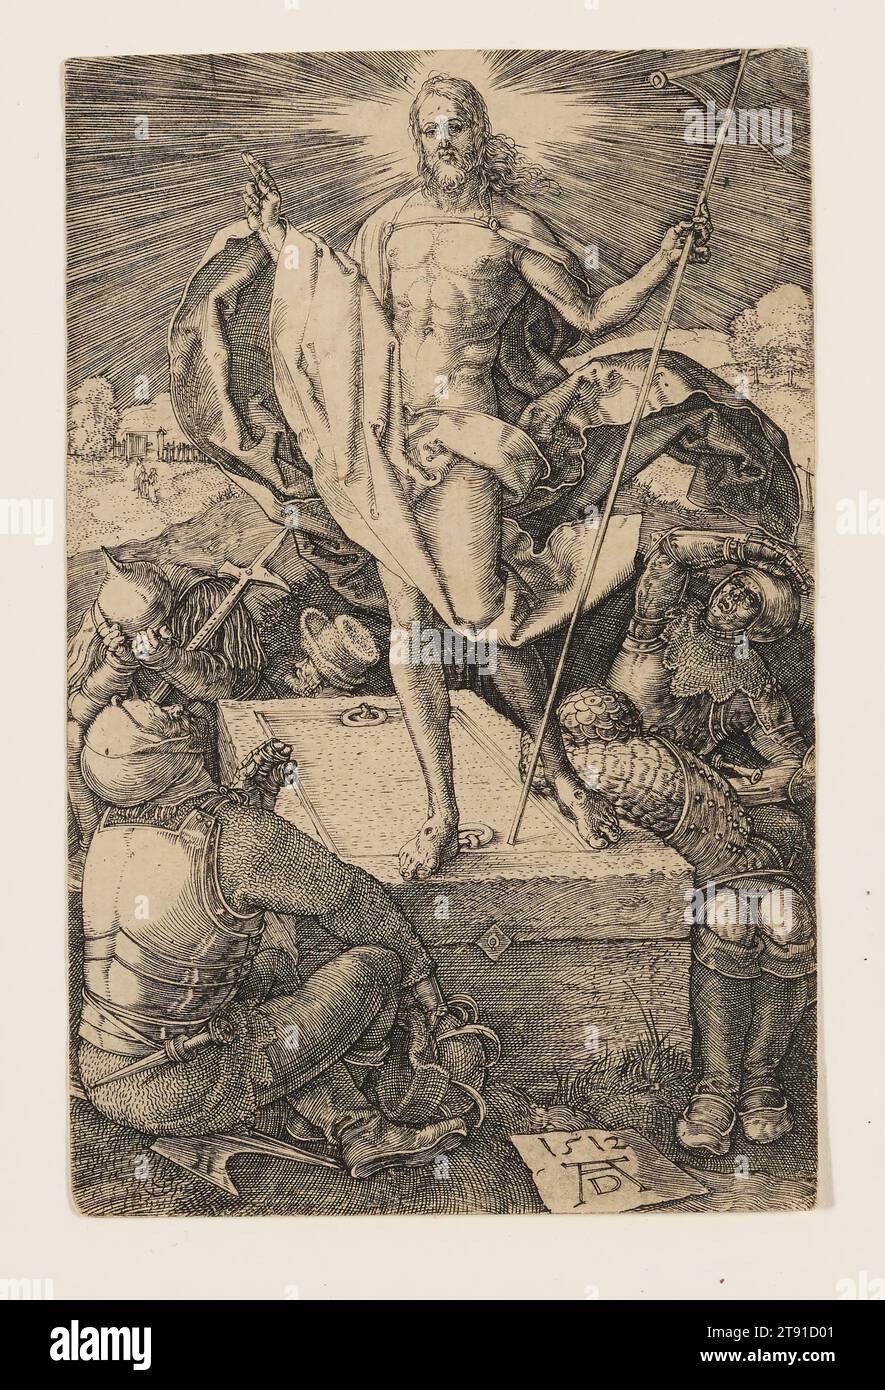 Auferstehung, 1512, Albrecht Dürer, 1471–1528, 1/2 x 7/8 Zoll (11,43 x 7,3 cm) (Bild), Gravur, Deutschland, 16. Jahrhundert, nach dem Biographen Vasari aus dem 16. Jahrhundert erreichten einige Drucke Dürers Florenz, darunter die Gravur Passion Serie, wo sie als die ultimative Perfektion und Qualität im Medium der Gravur eingestuft wurden. Unter den Florentiner Künstlern, die sie studierten, war Jacopo Pontormo (1494–1556). 1522-23 malte Pontormo, als er der Pest in einem Kloster außerhalb von Florenz entfliehen wollte, eine Freskenserie, die die Passion illustrierte. Stockfoto